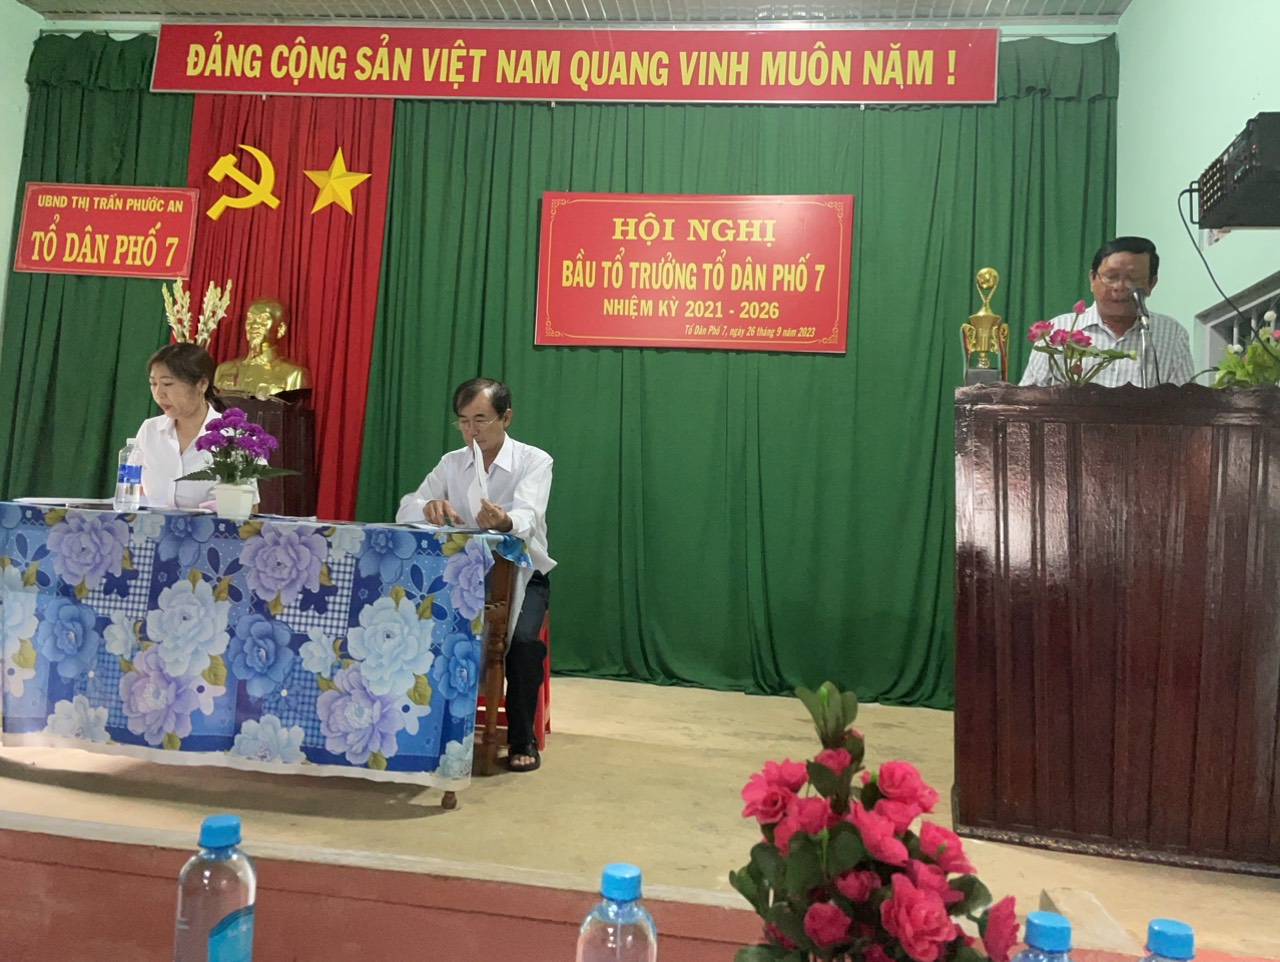 Tổ dân phố 7 thị trấn Phước An tổ chức hội nghị bầu tổ trưởng TDP7 nhiệm kỳ 2021-2026